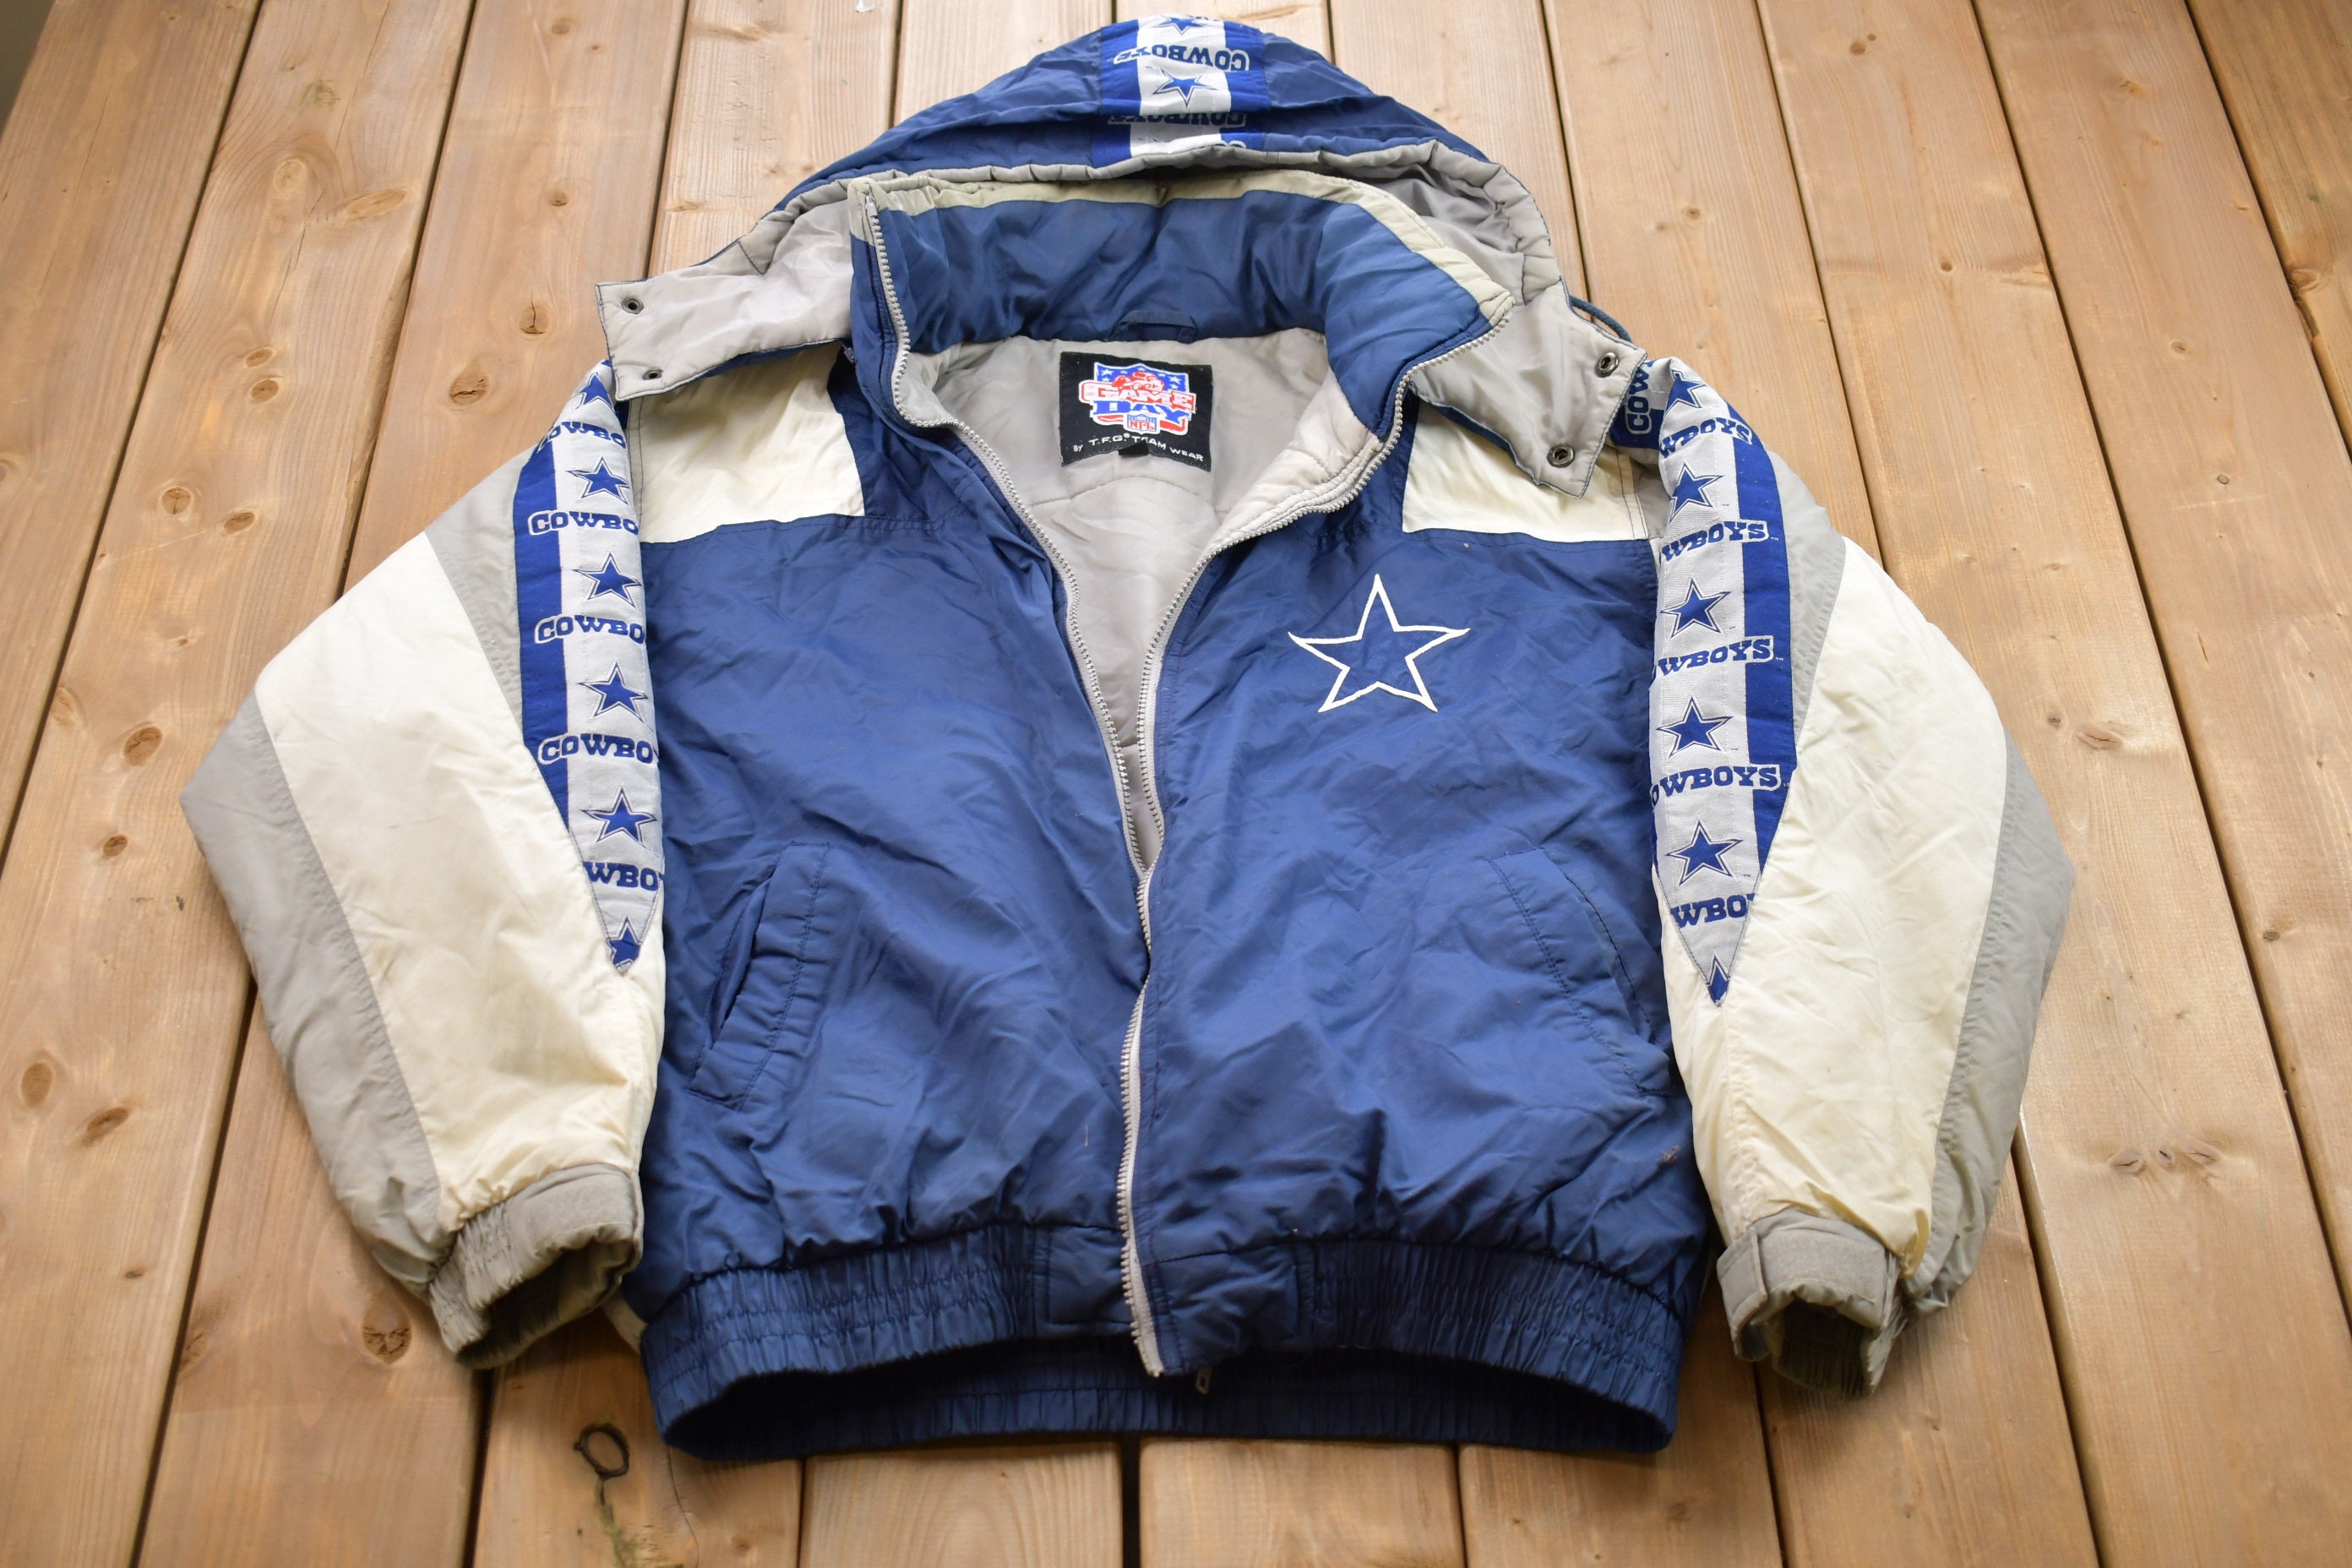 Vintage Dallas Cowboys NFL Men's Jacket Size L/G Blue -  New